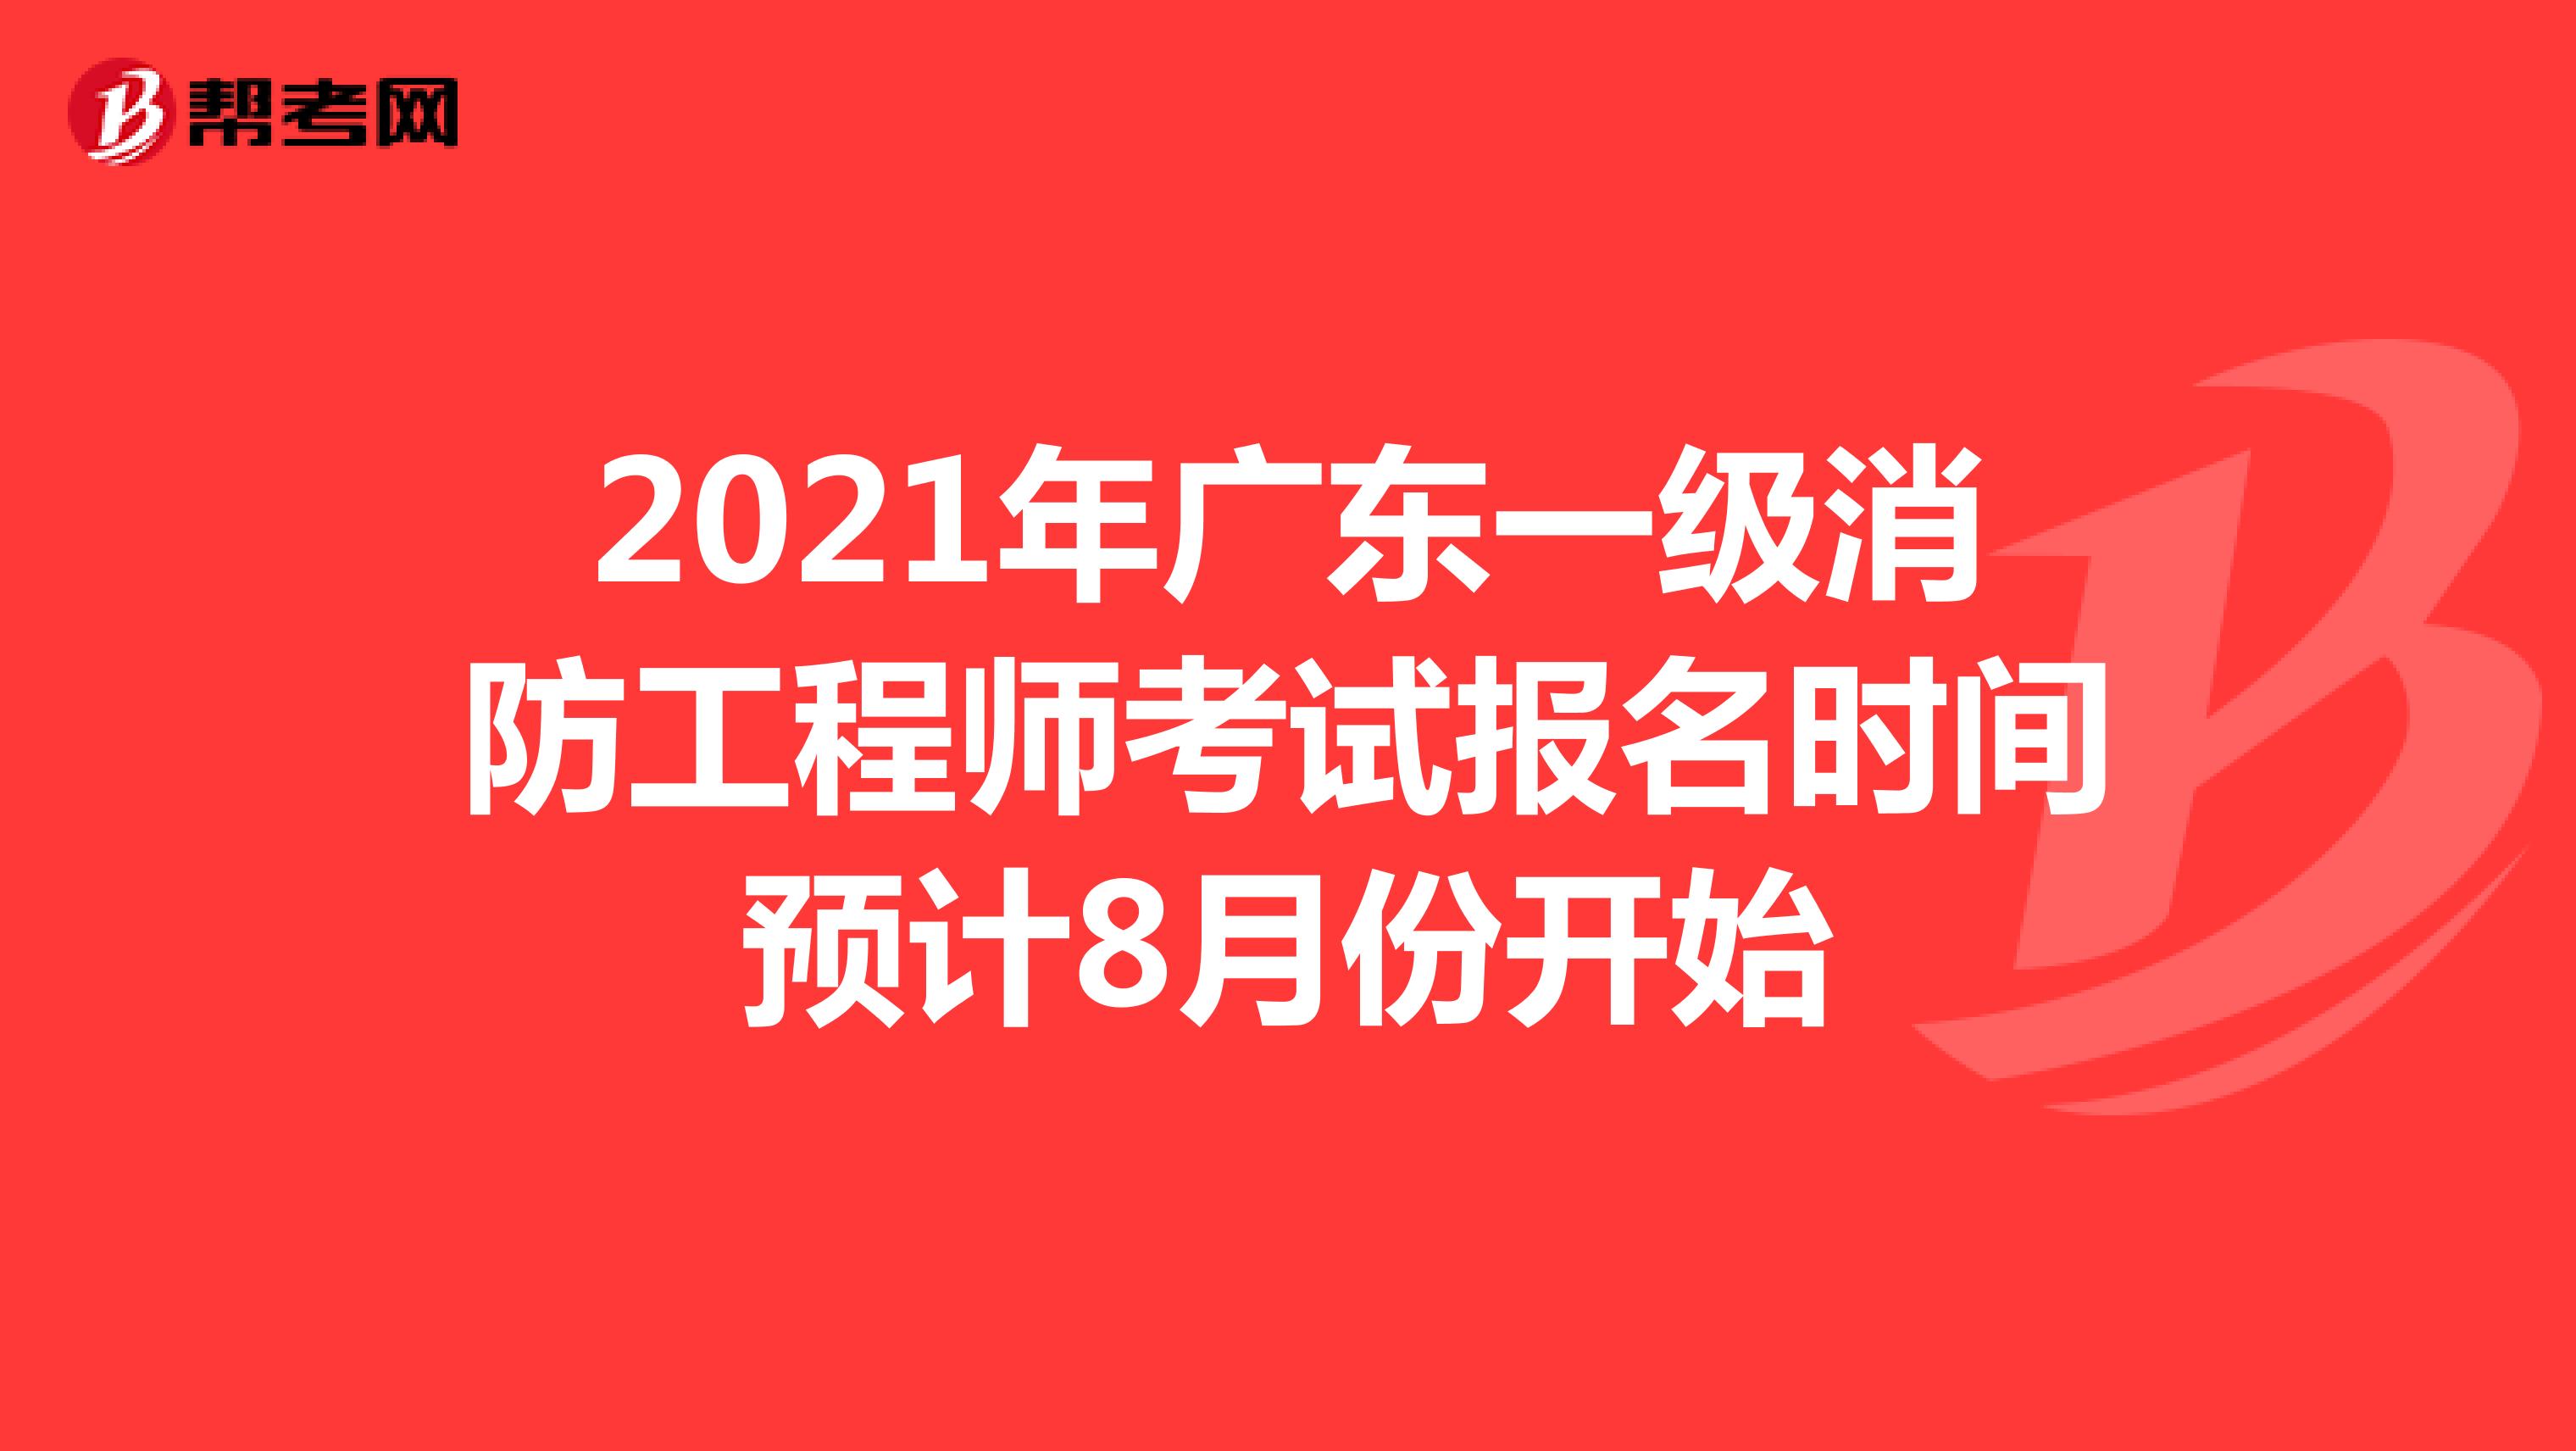 2021年广东一级消防工程师考试报名时间预计8月份开始